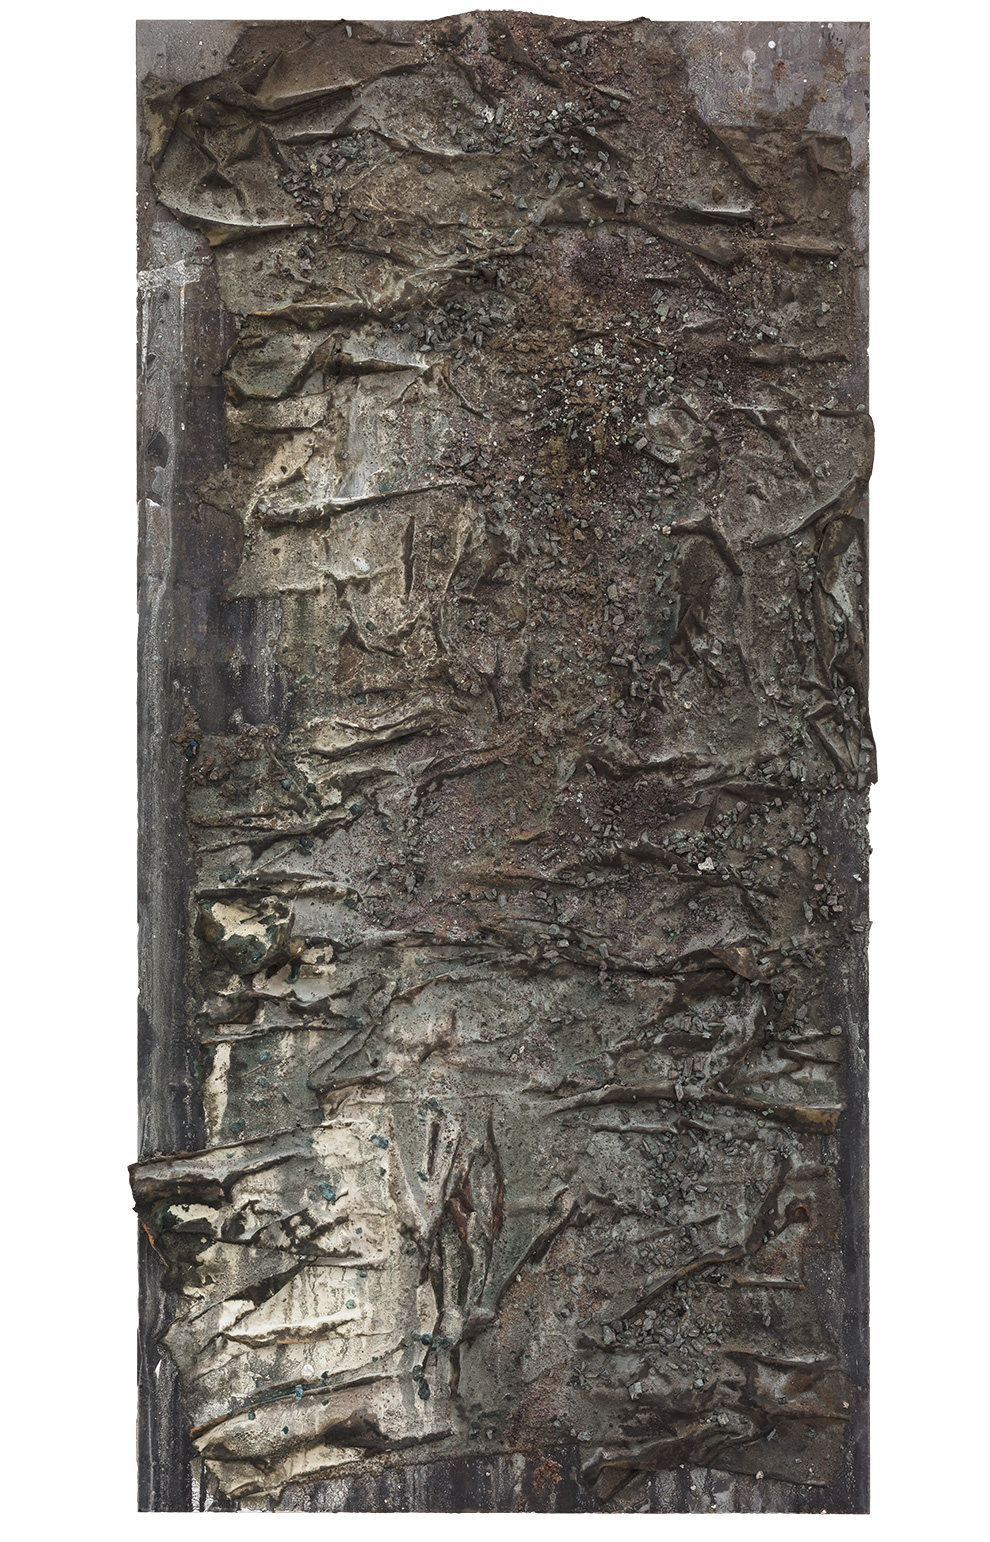 《书卷》二十五-244x122cm--木质构造、麻纸、矿物·植物·土质颜料-、金银粉、金属渣、箔--2018年.jpg